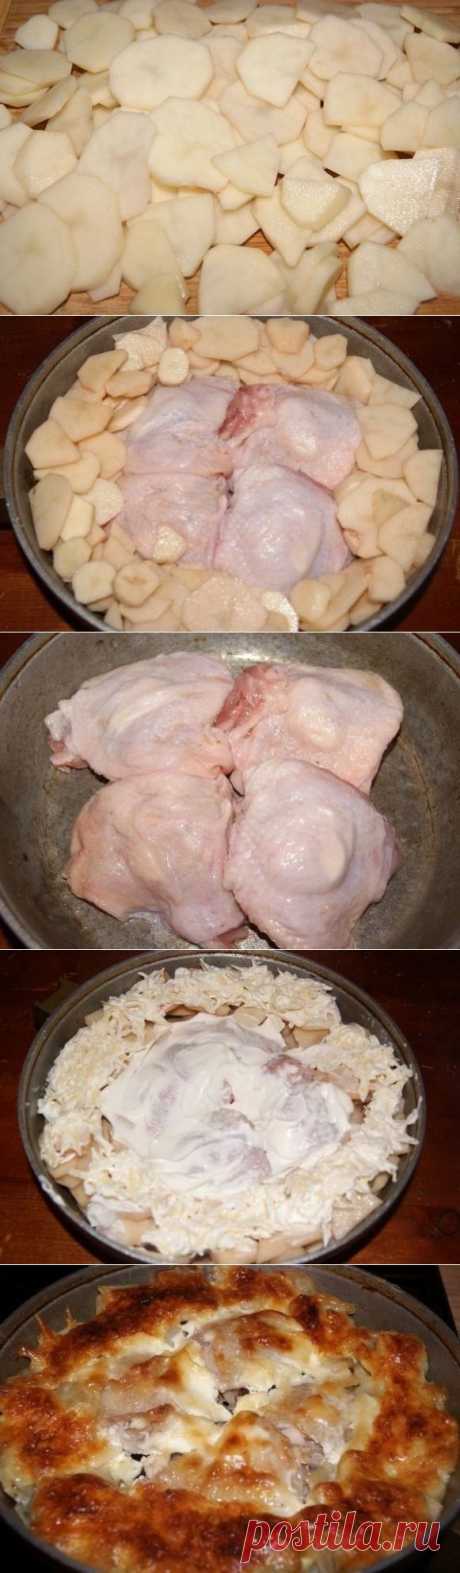 Как приготовить куриные бедра в картофельном кольце - рецепт, ингридиенты и фотографии